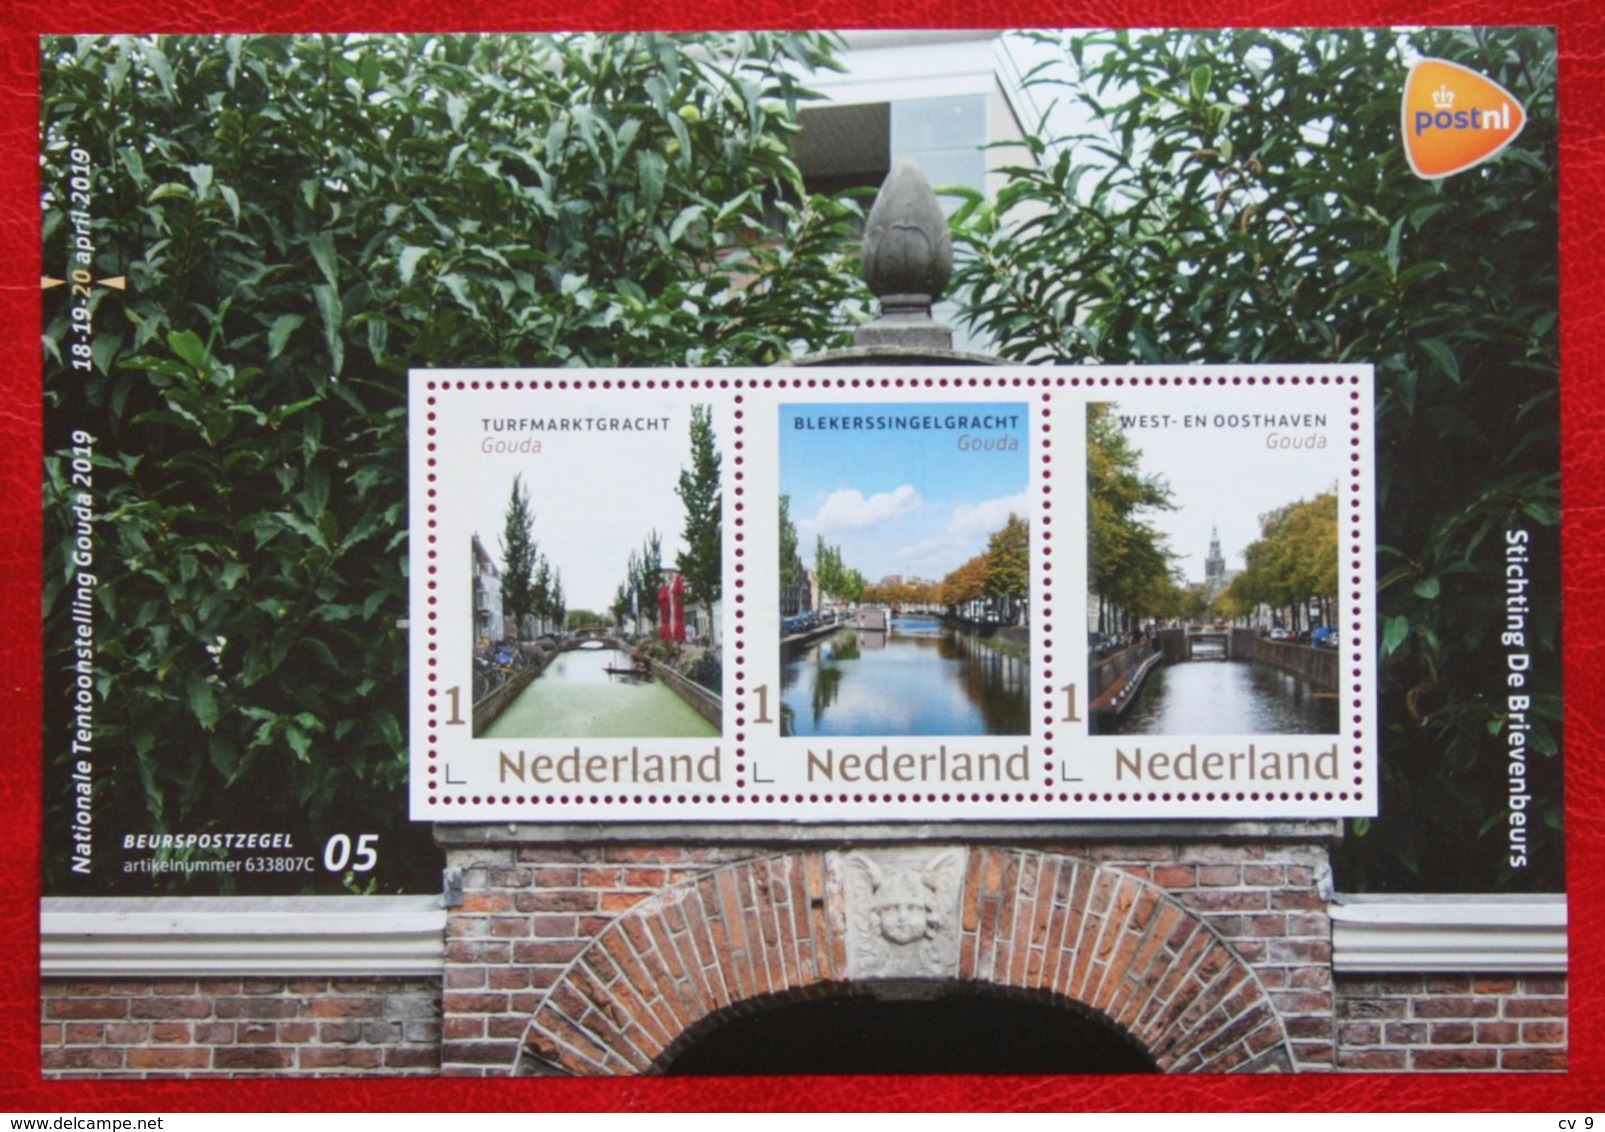 Beurspostzegels Nr. 5 Nationale Tentoonstelling Gouda Bike Velo 2019 POSTFRIS MNH ** NEDERLAND NIEDERLANDE NETHERLANDS - Unused Stamps